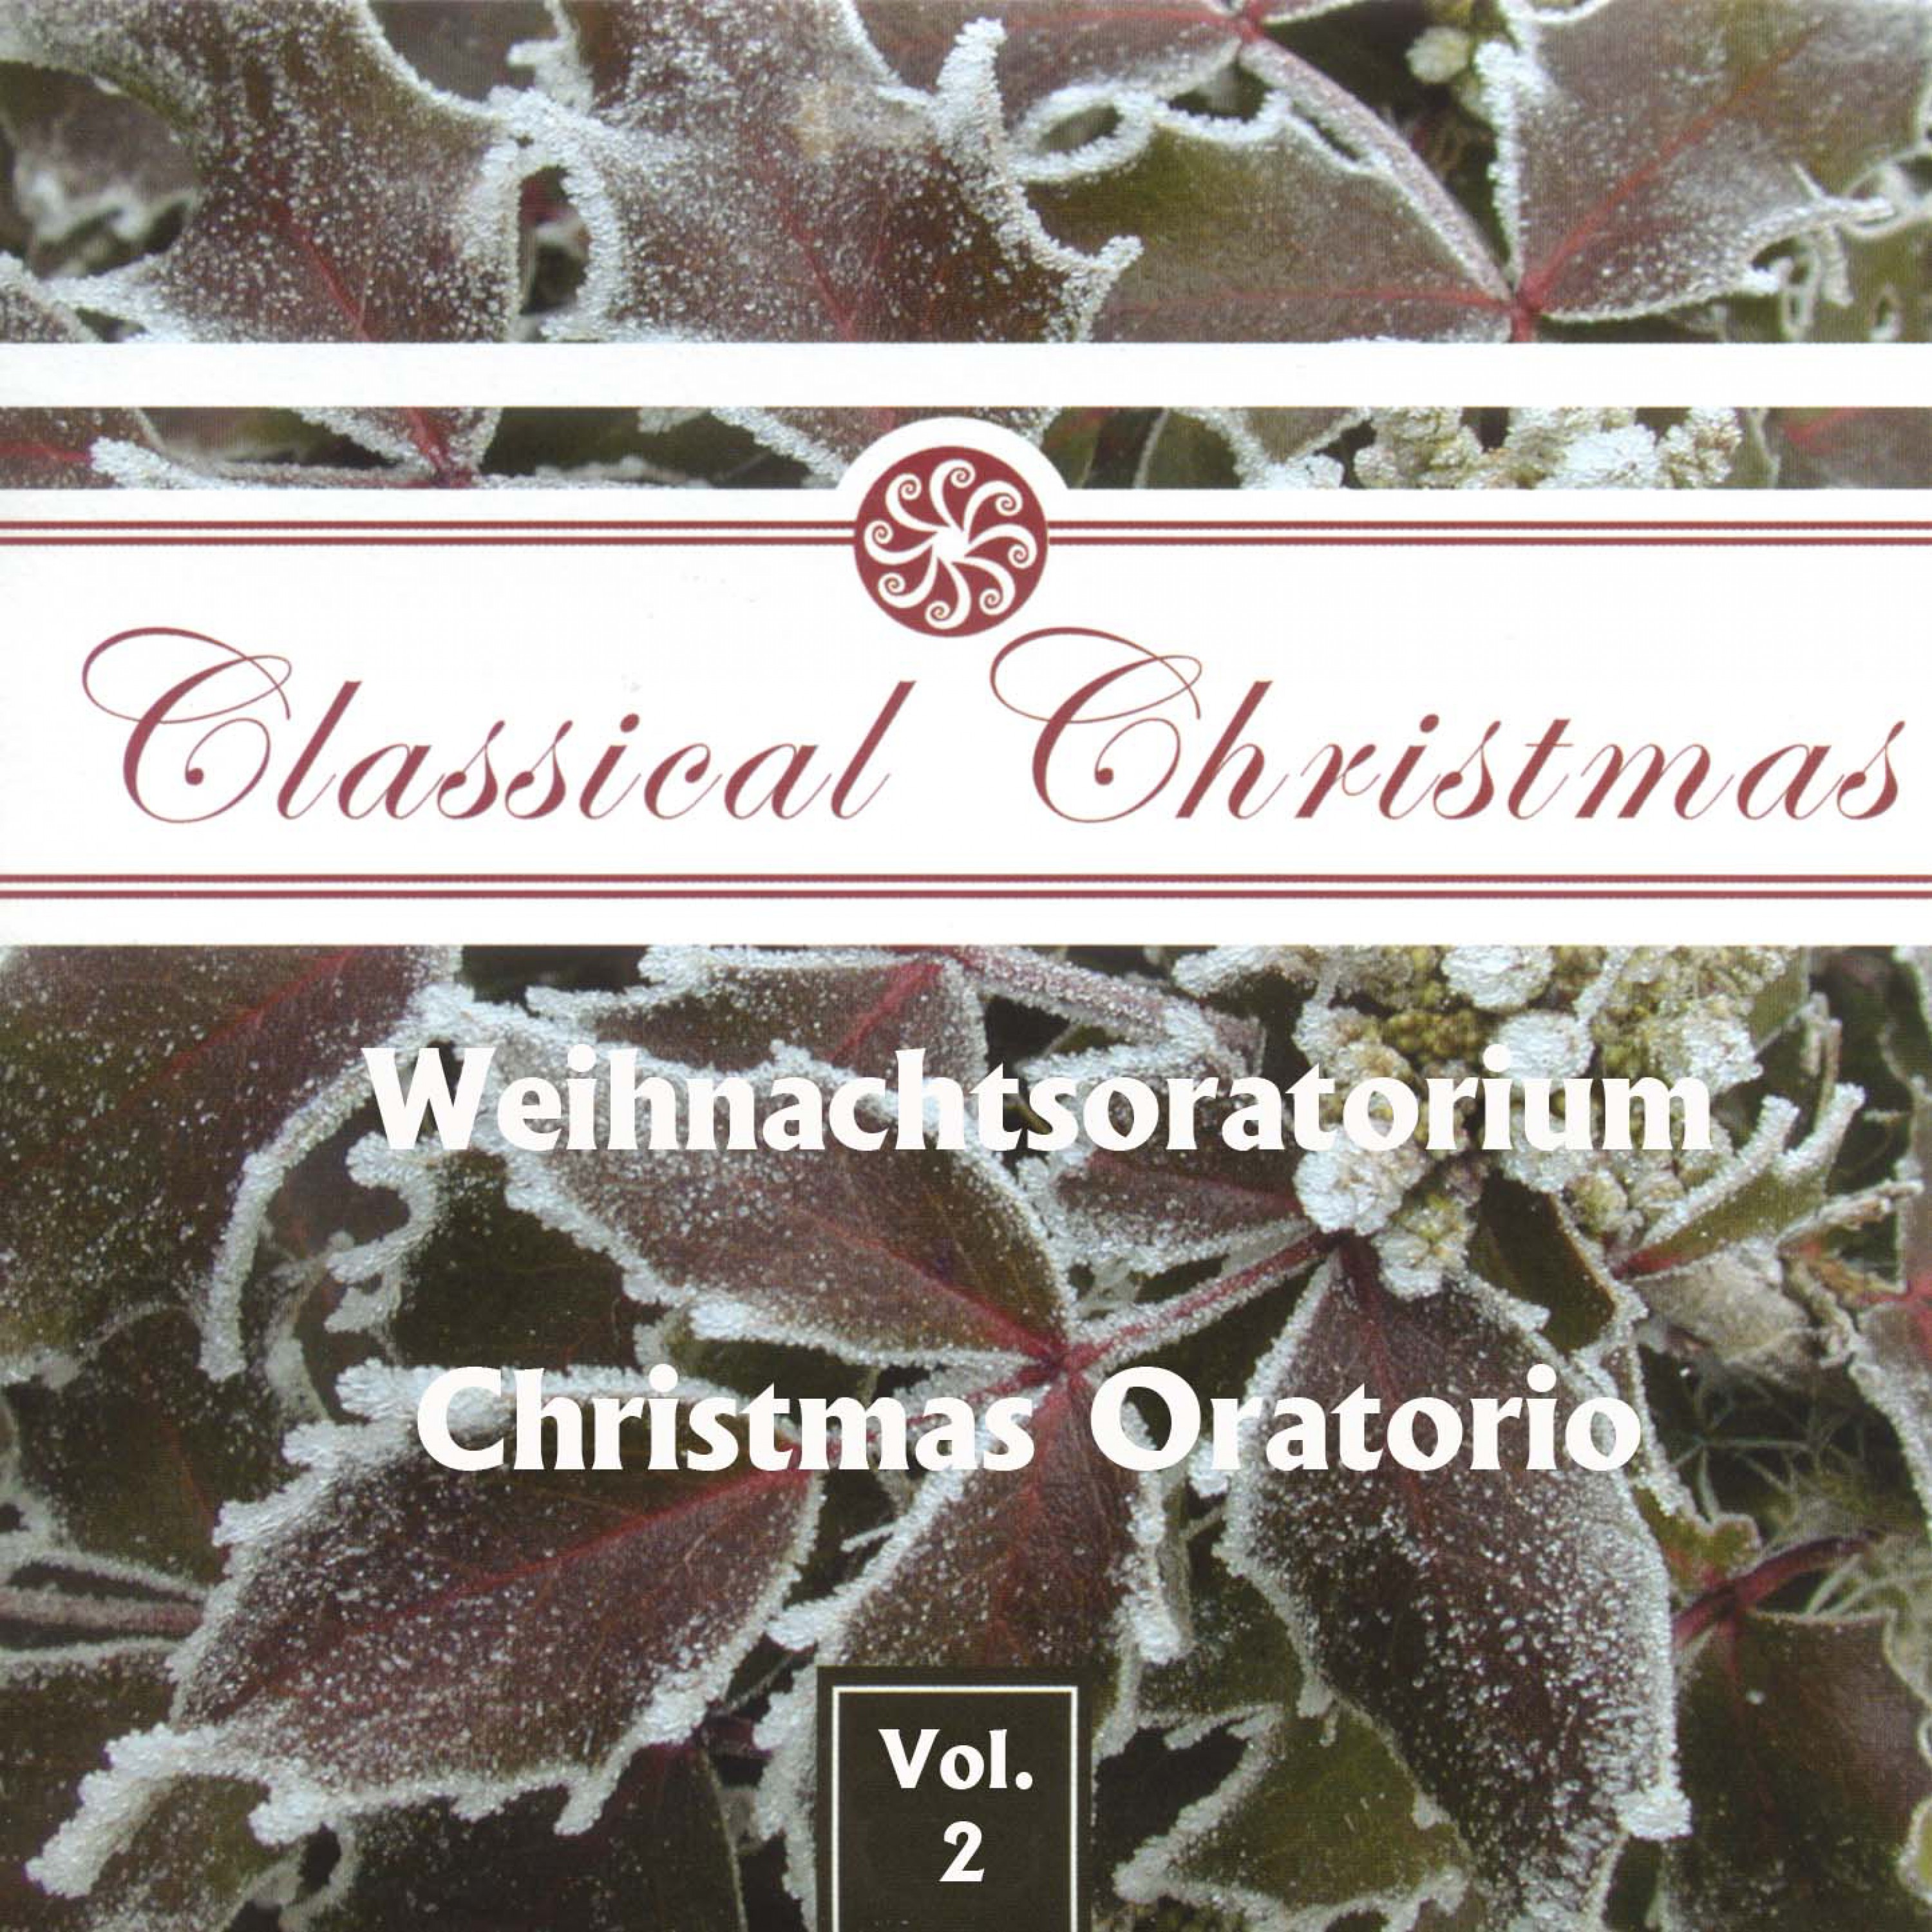 Johann Sebastian Bach: "Weihnachts Oratorium